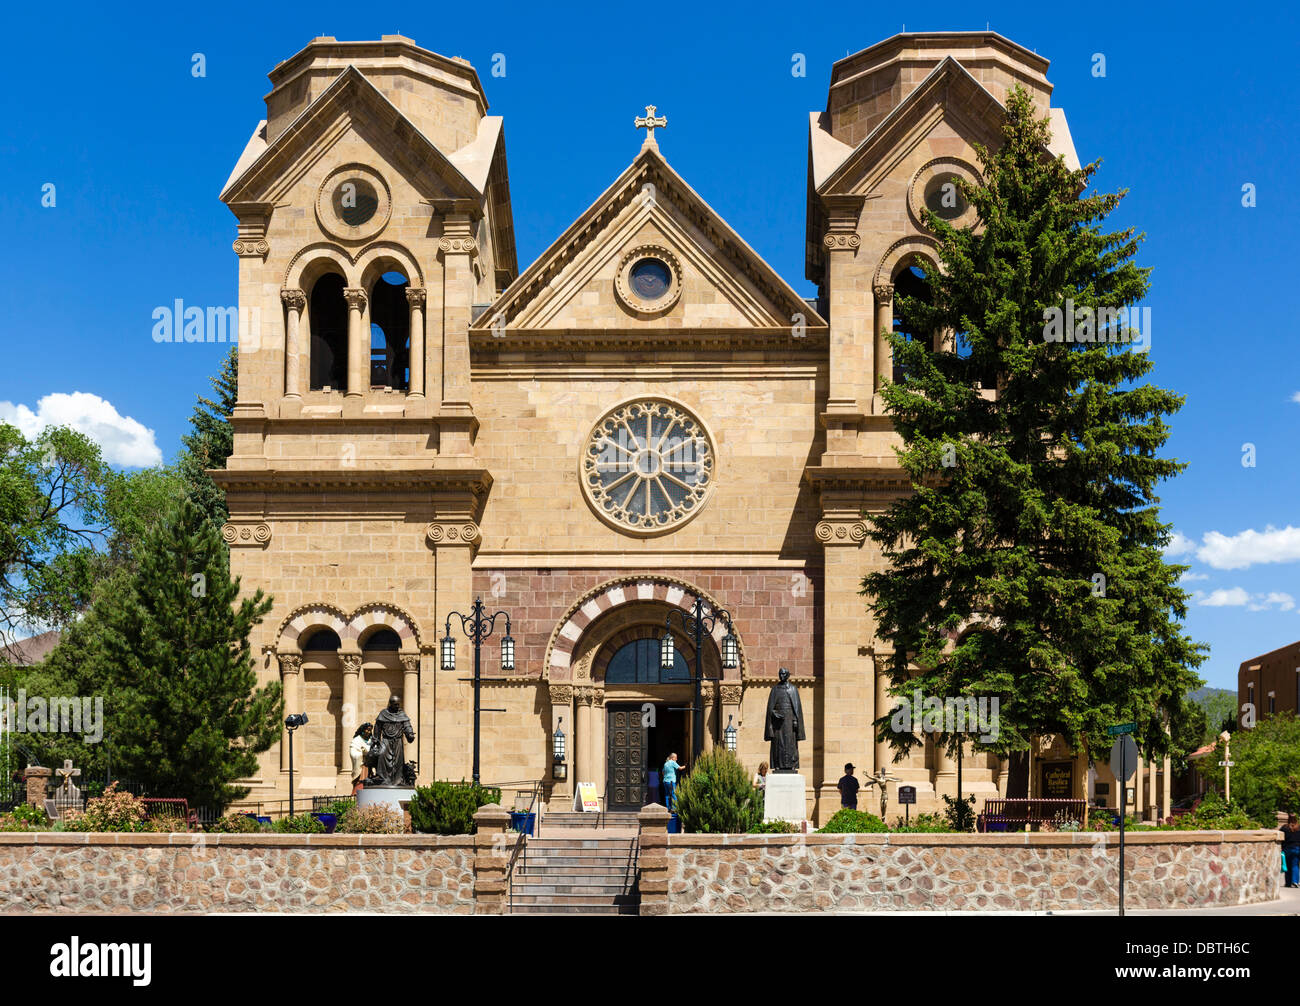 St Francis Cathedral, Santa Fe, New Mexico, USA Stock Photo